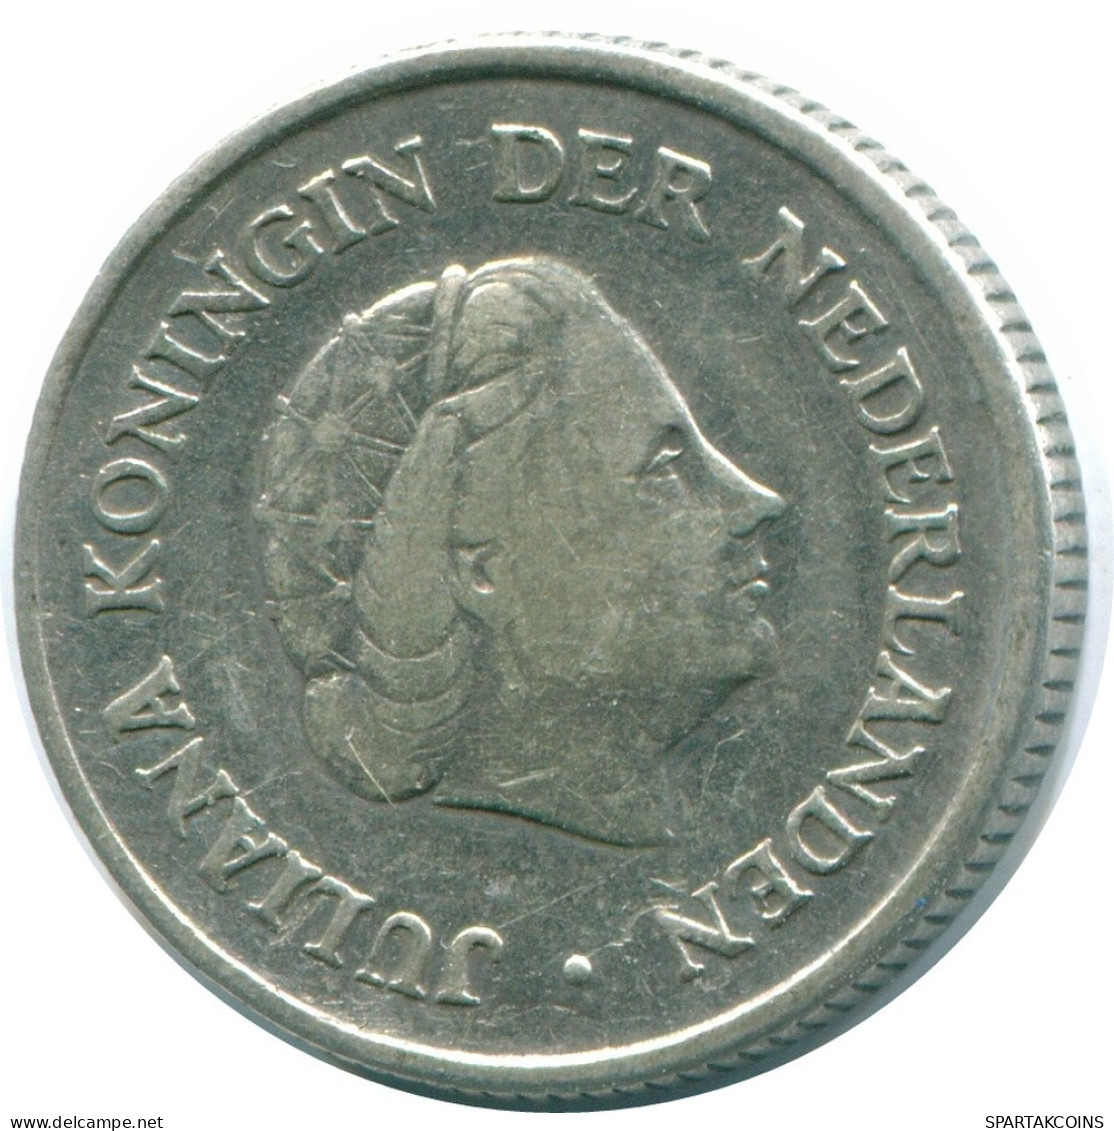 1/4 GULDEN 1962 NIEDERLÄNDISCHE ANTILLEN SILBER Koloniale Münze #NL11177.4.D.A - Nederlandse Antillen